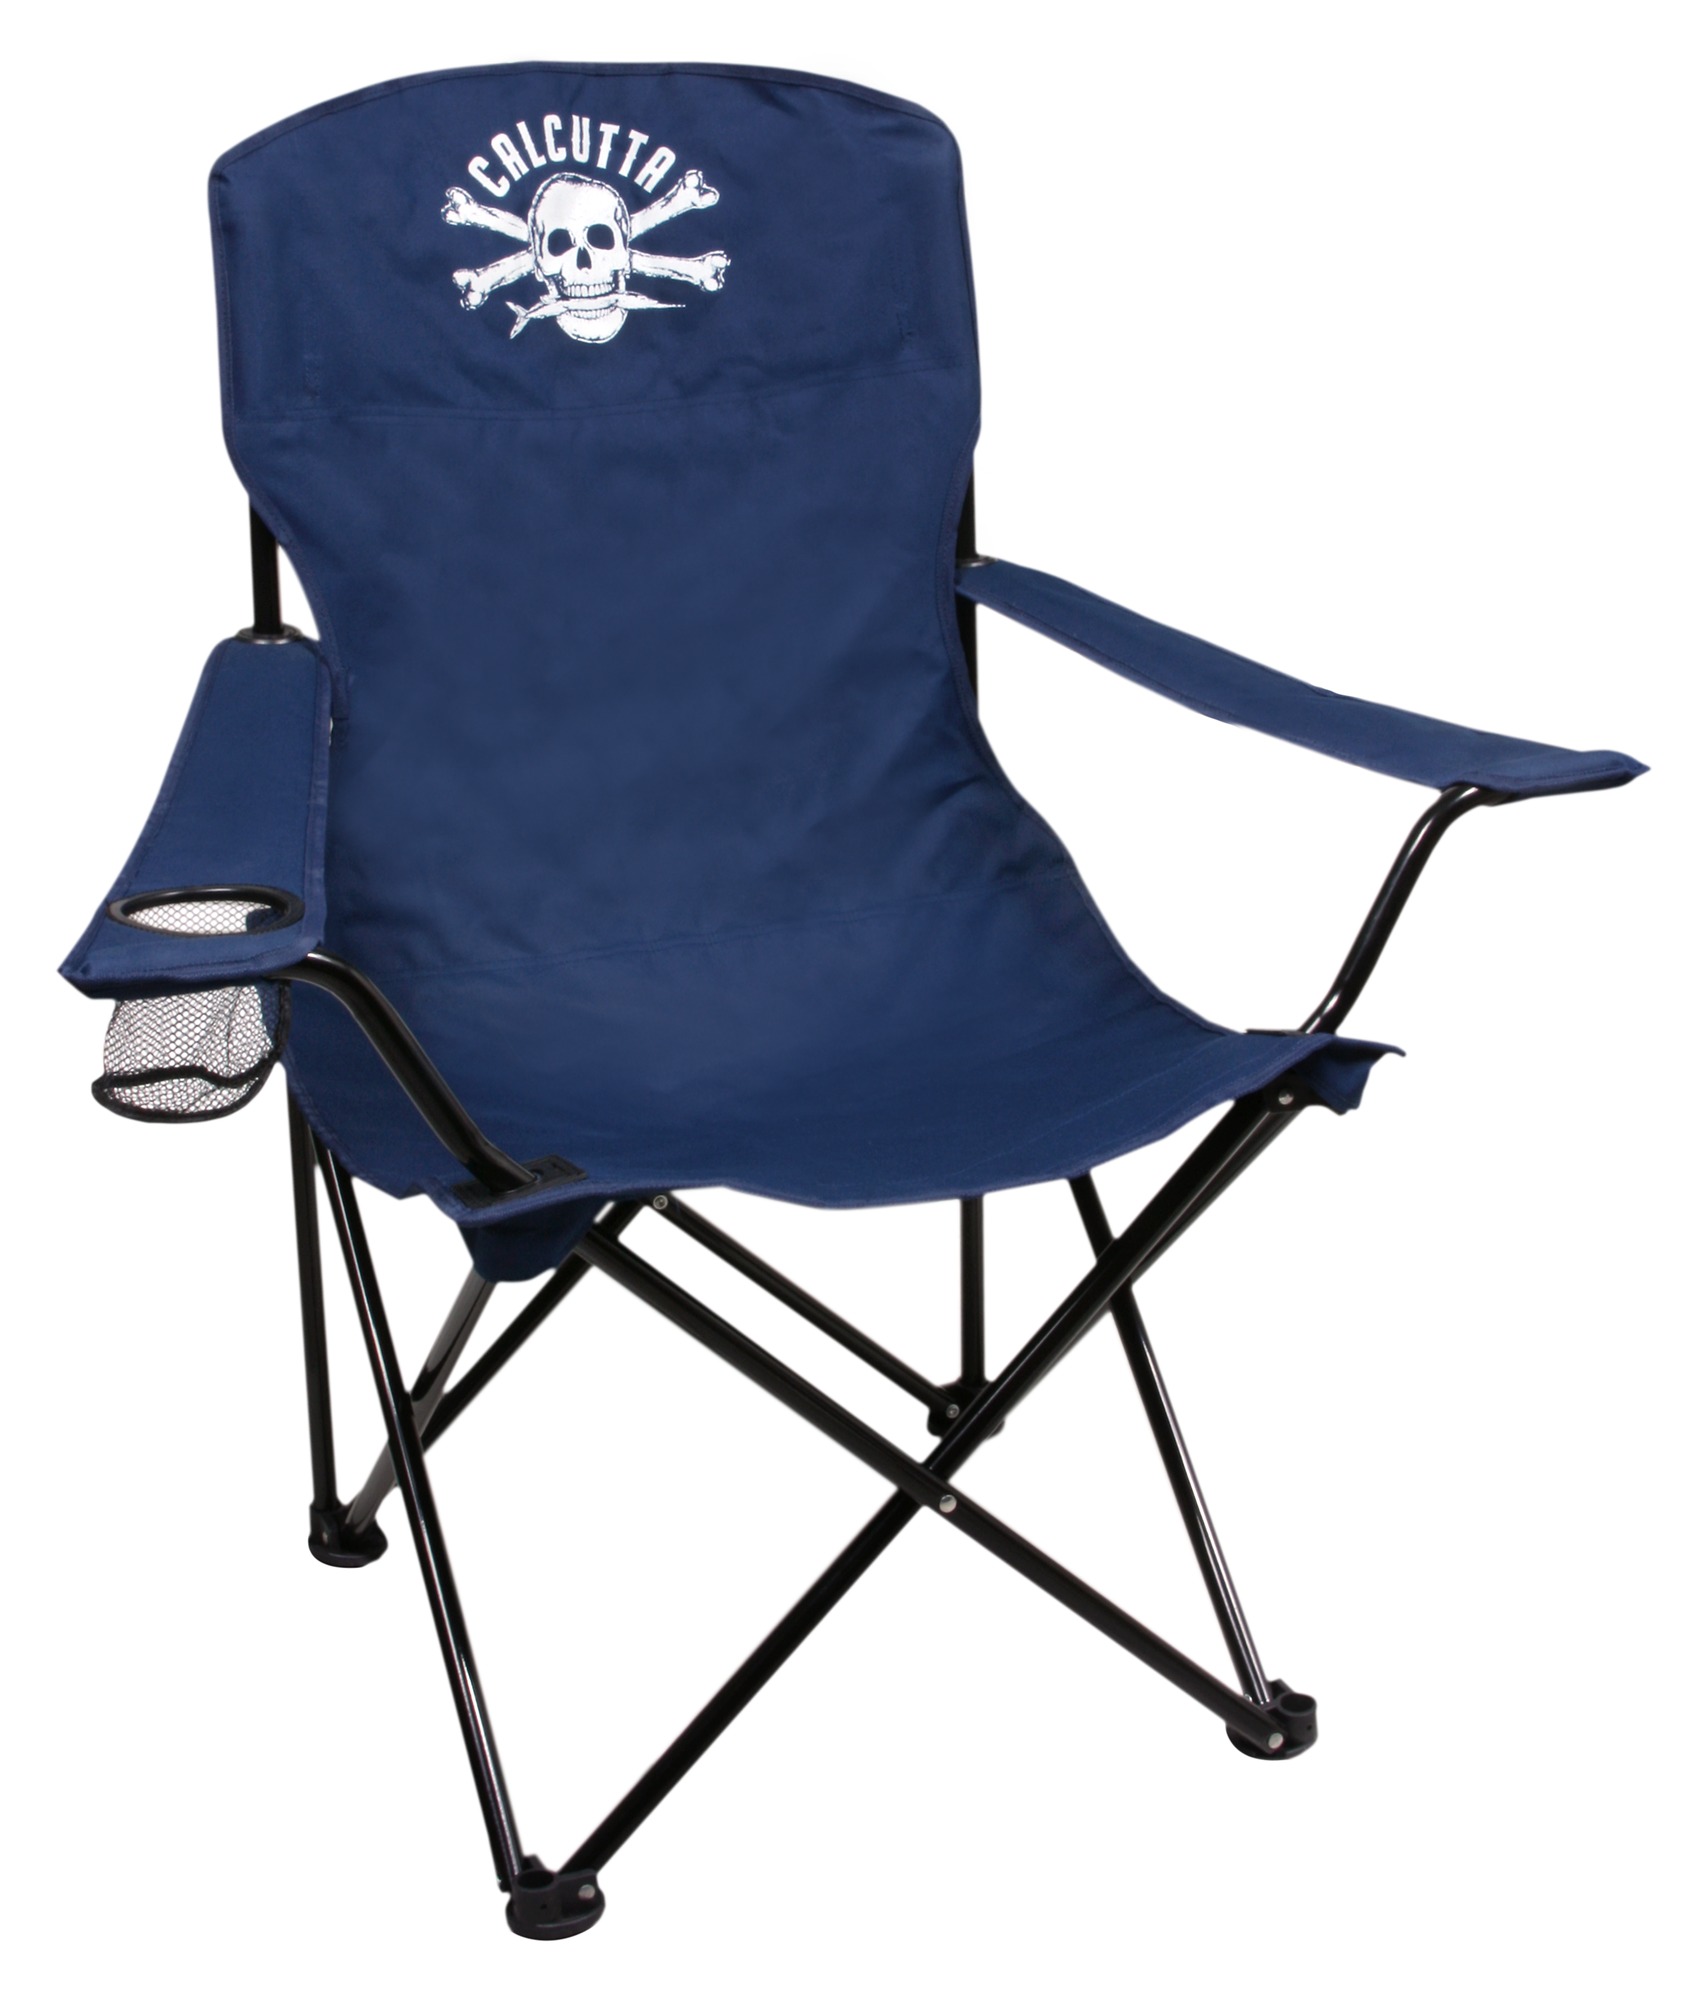 calcutta chair blue